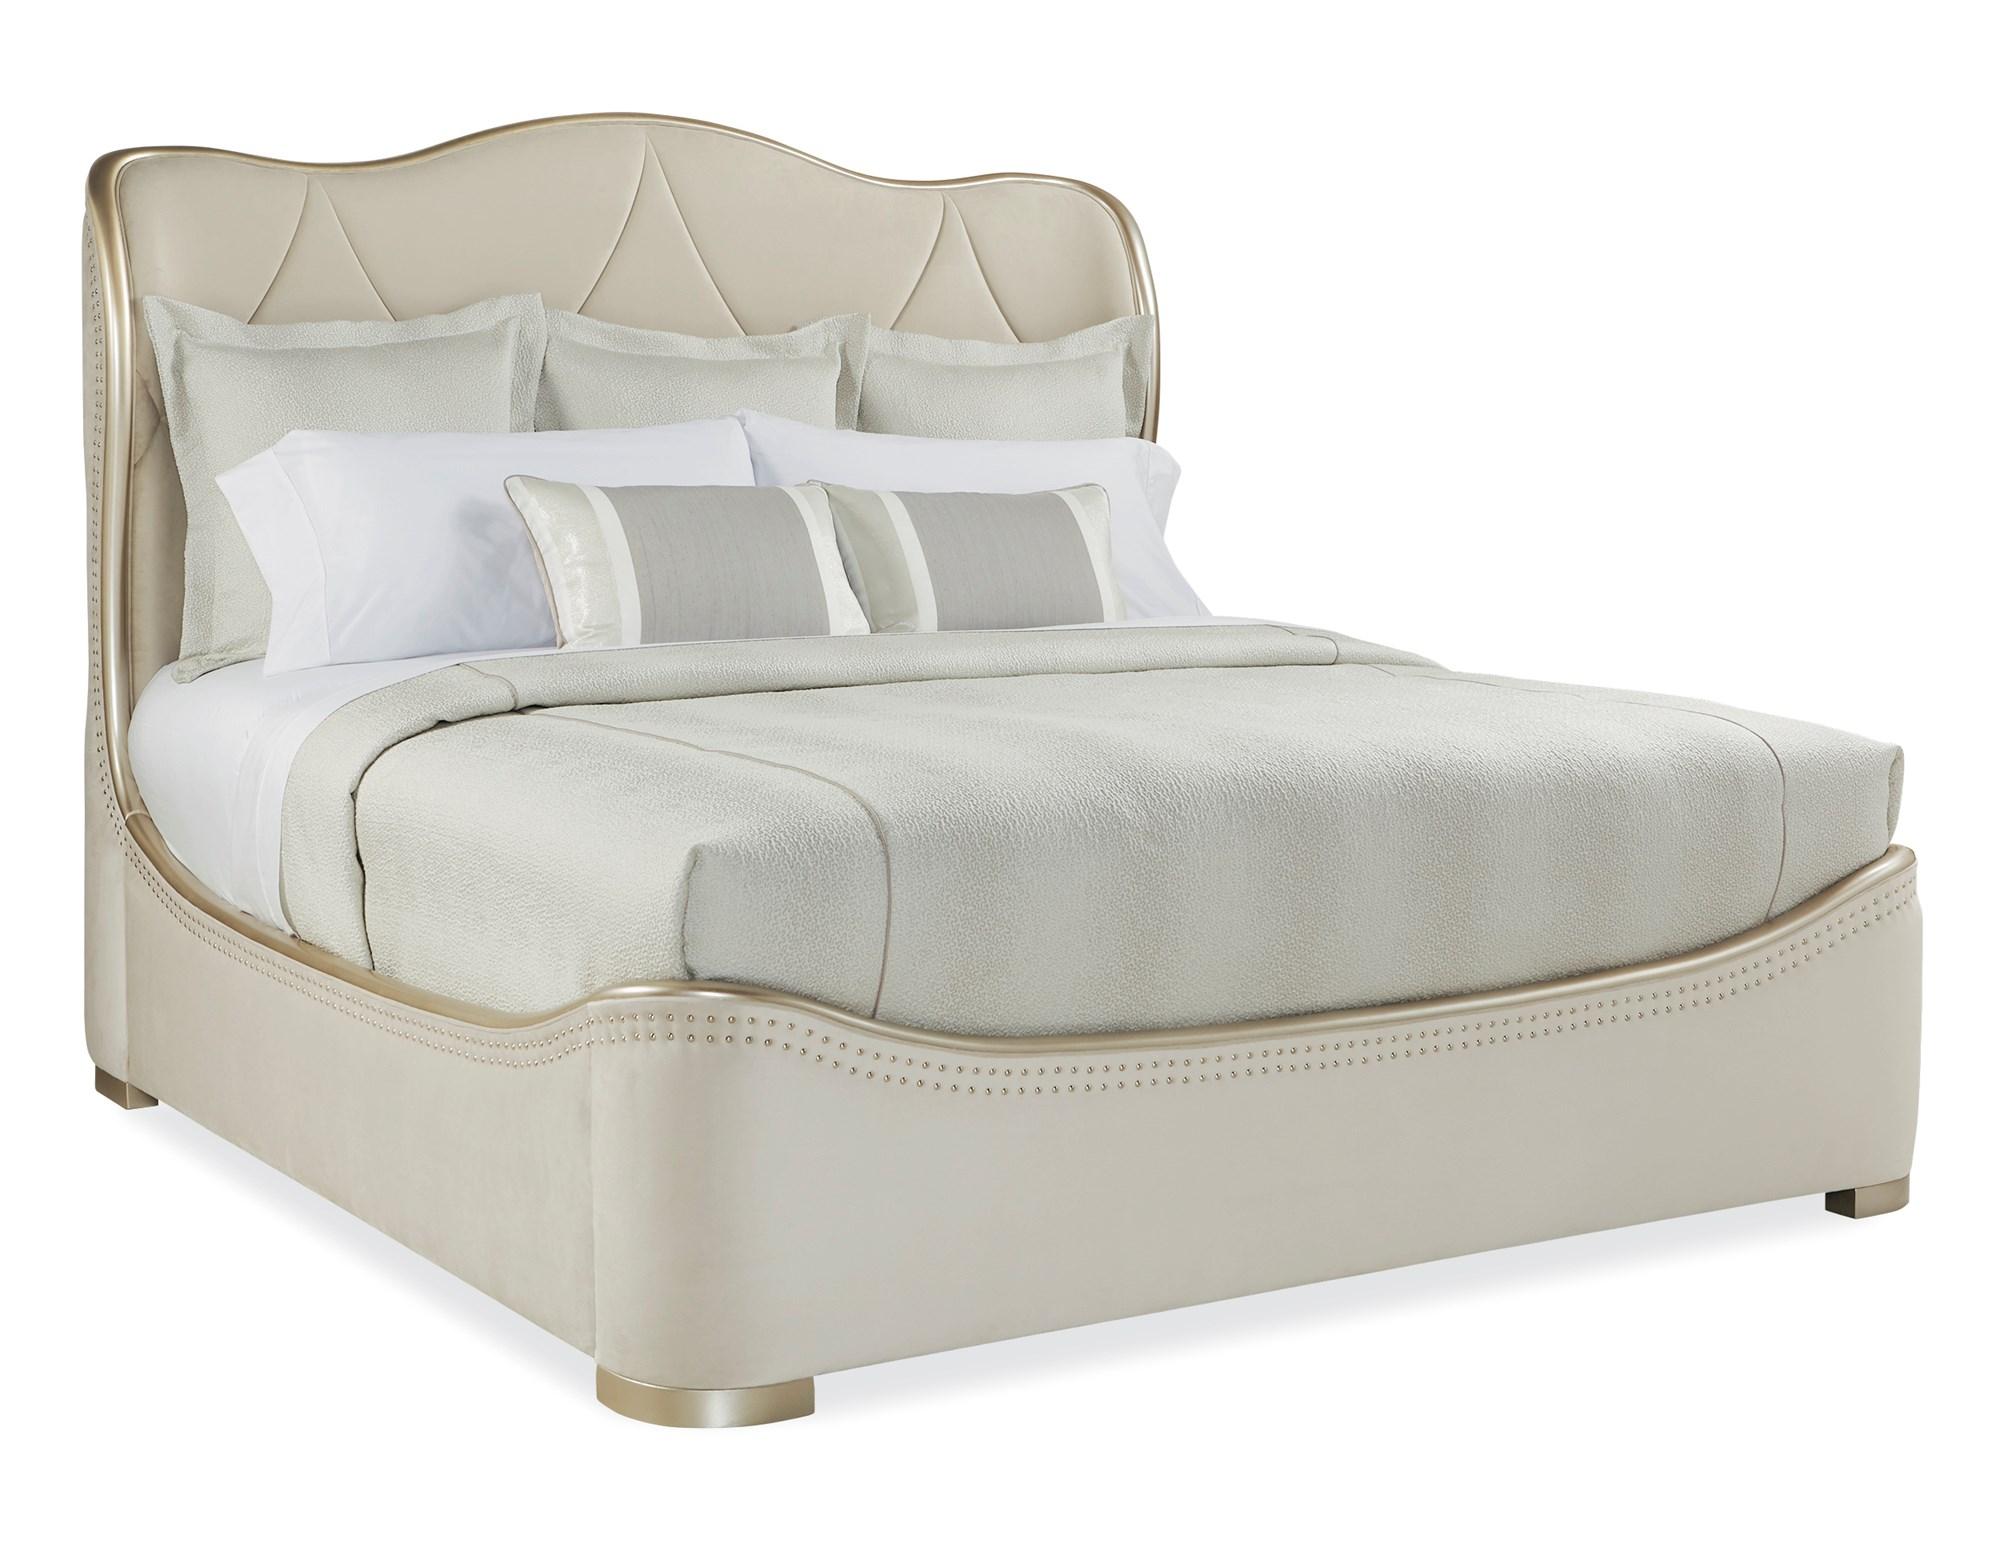 Contemporary Sleigh Bed ADELA KING BED C013-016-122 in Cream Velvet